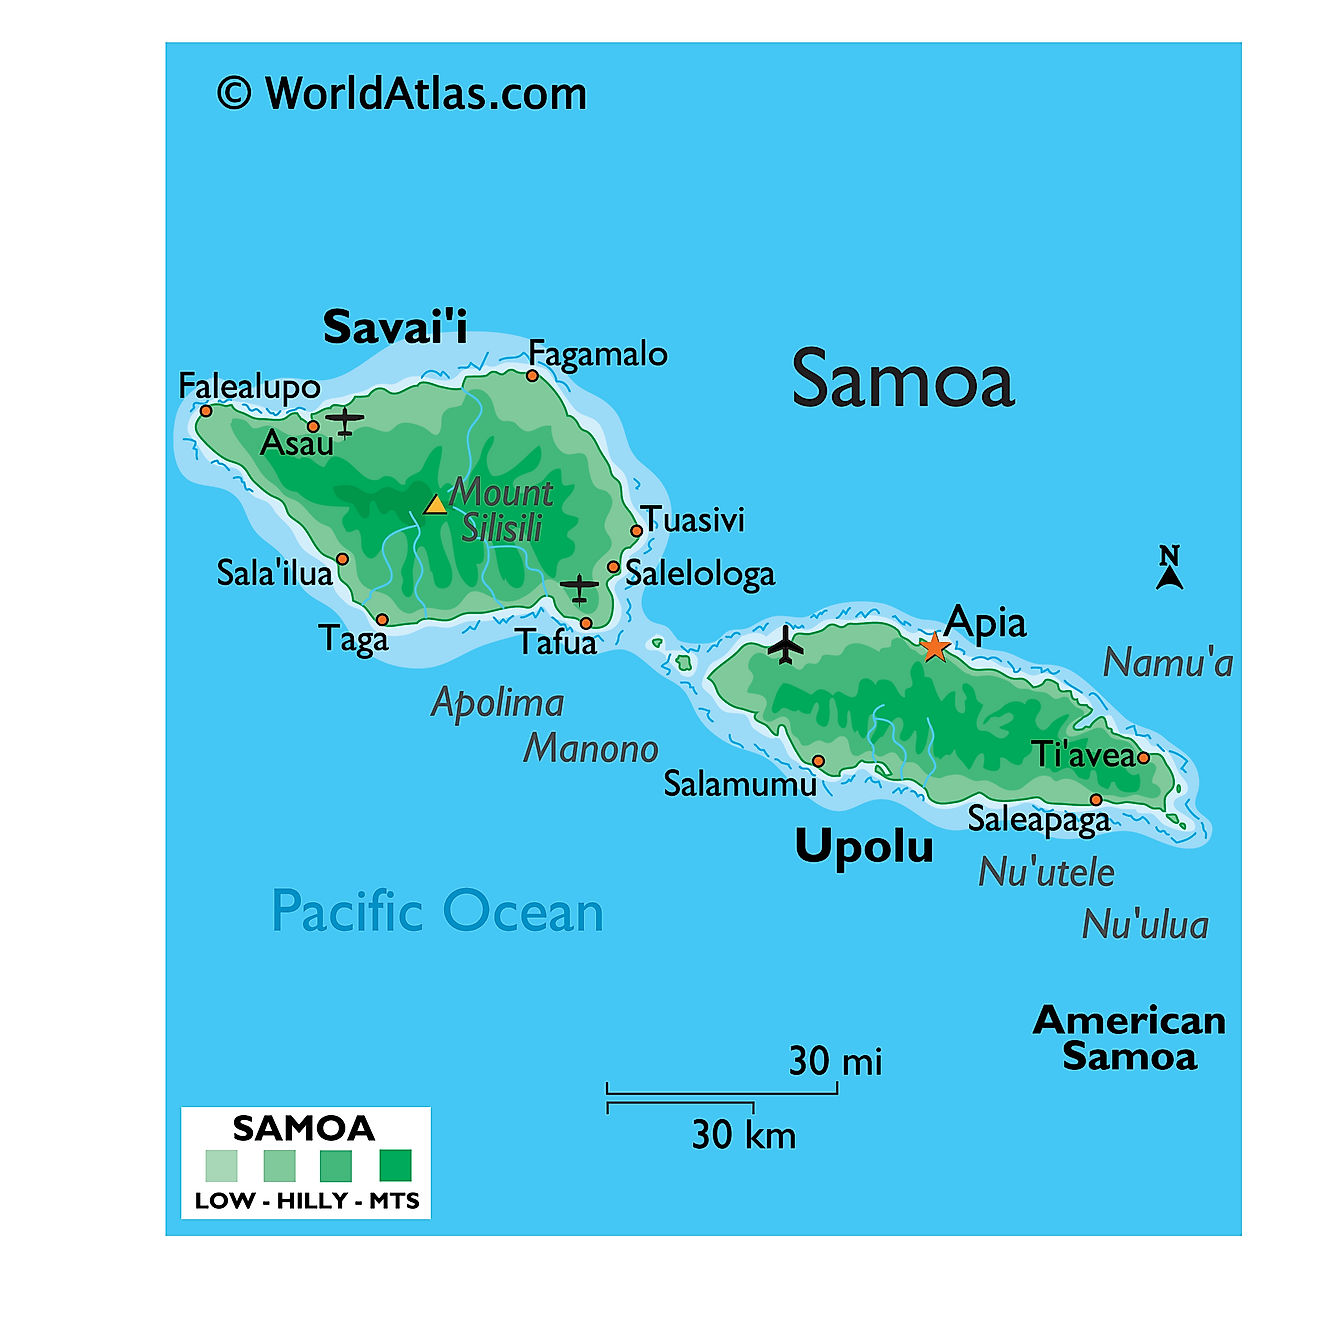 Mapa físico de Samoa que muestra el relieve, las islas principales, el punto más alto, los asentamientos importantes, etc.